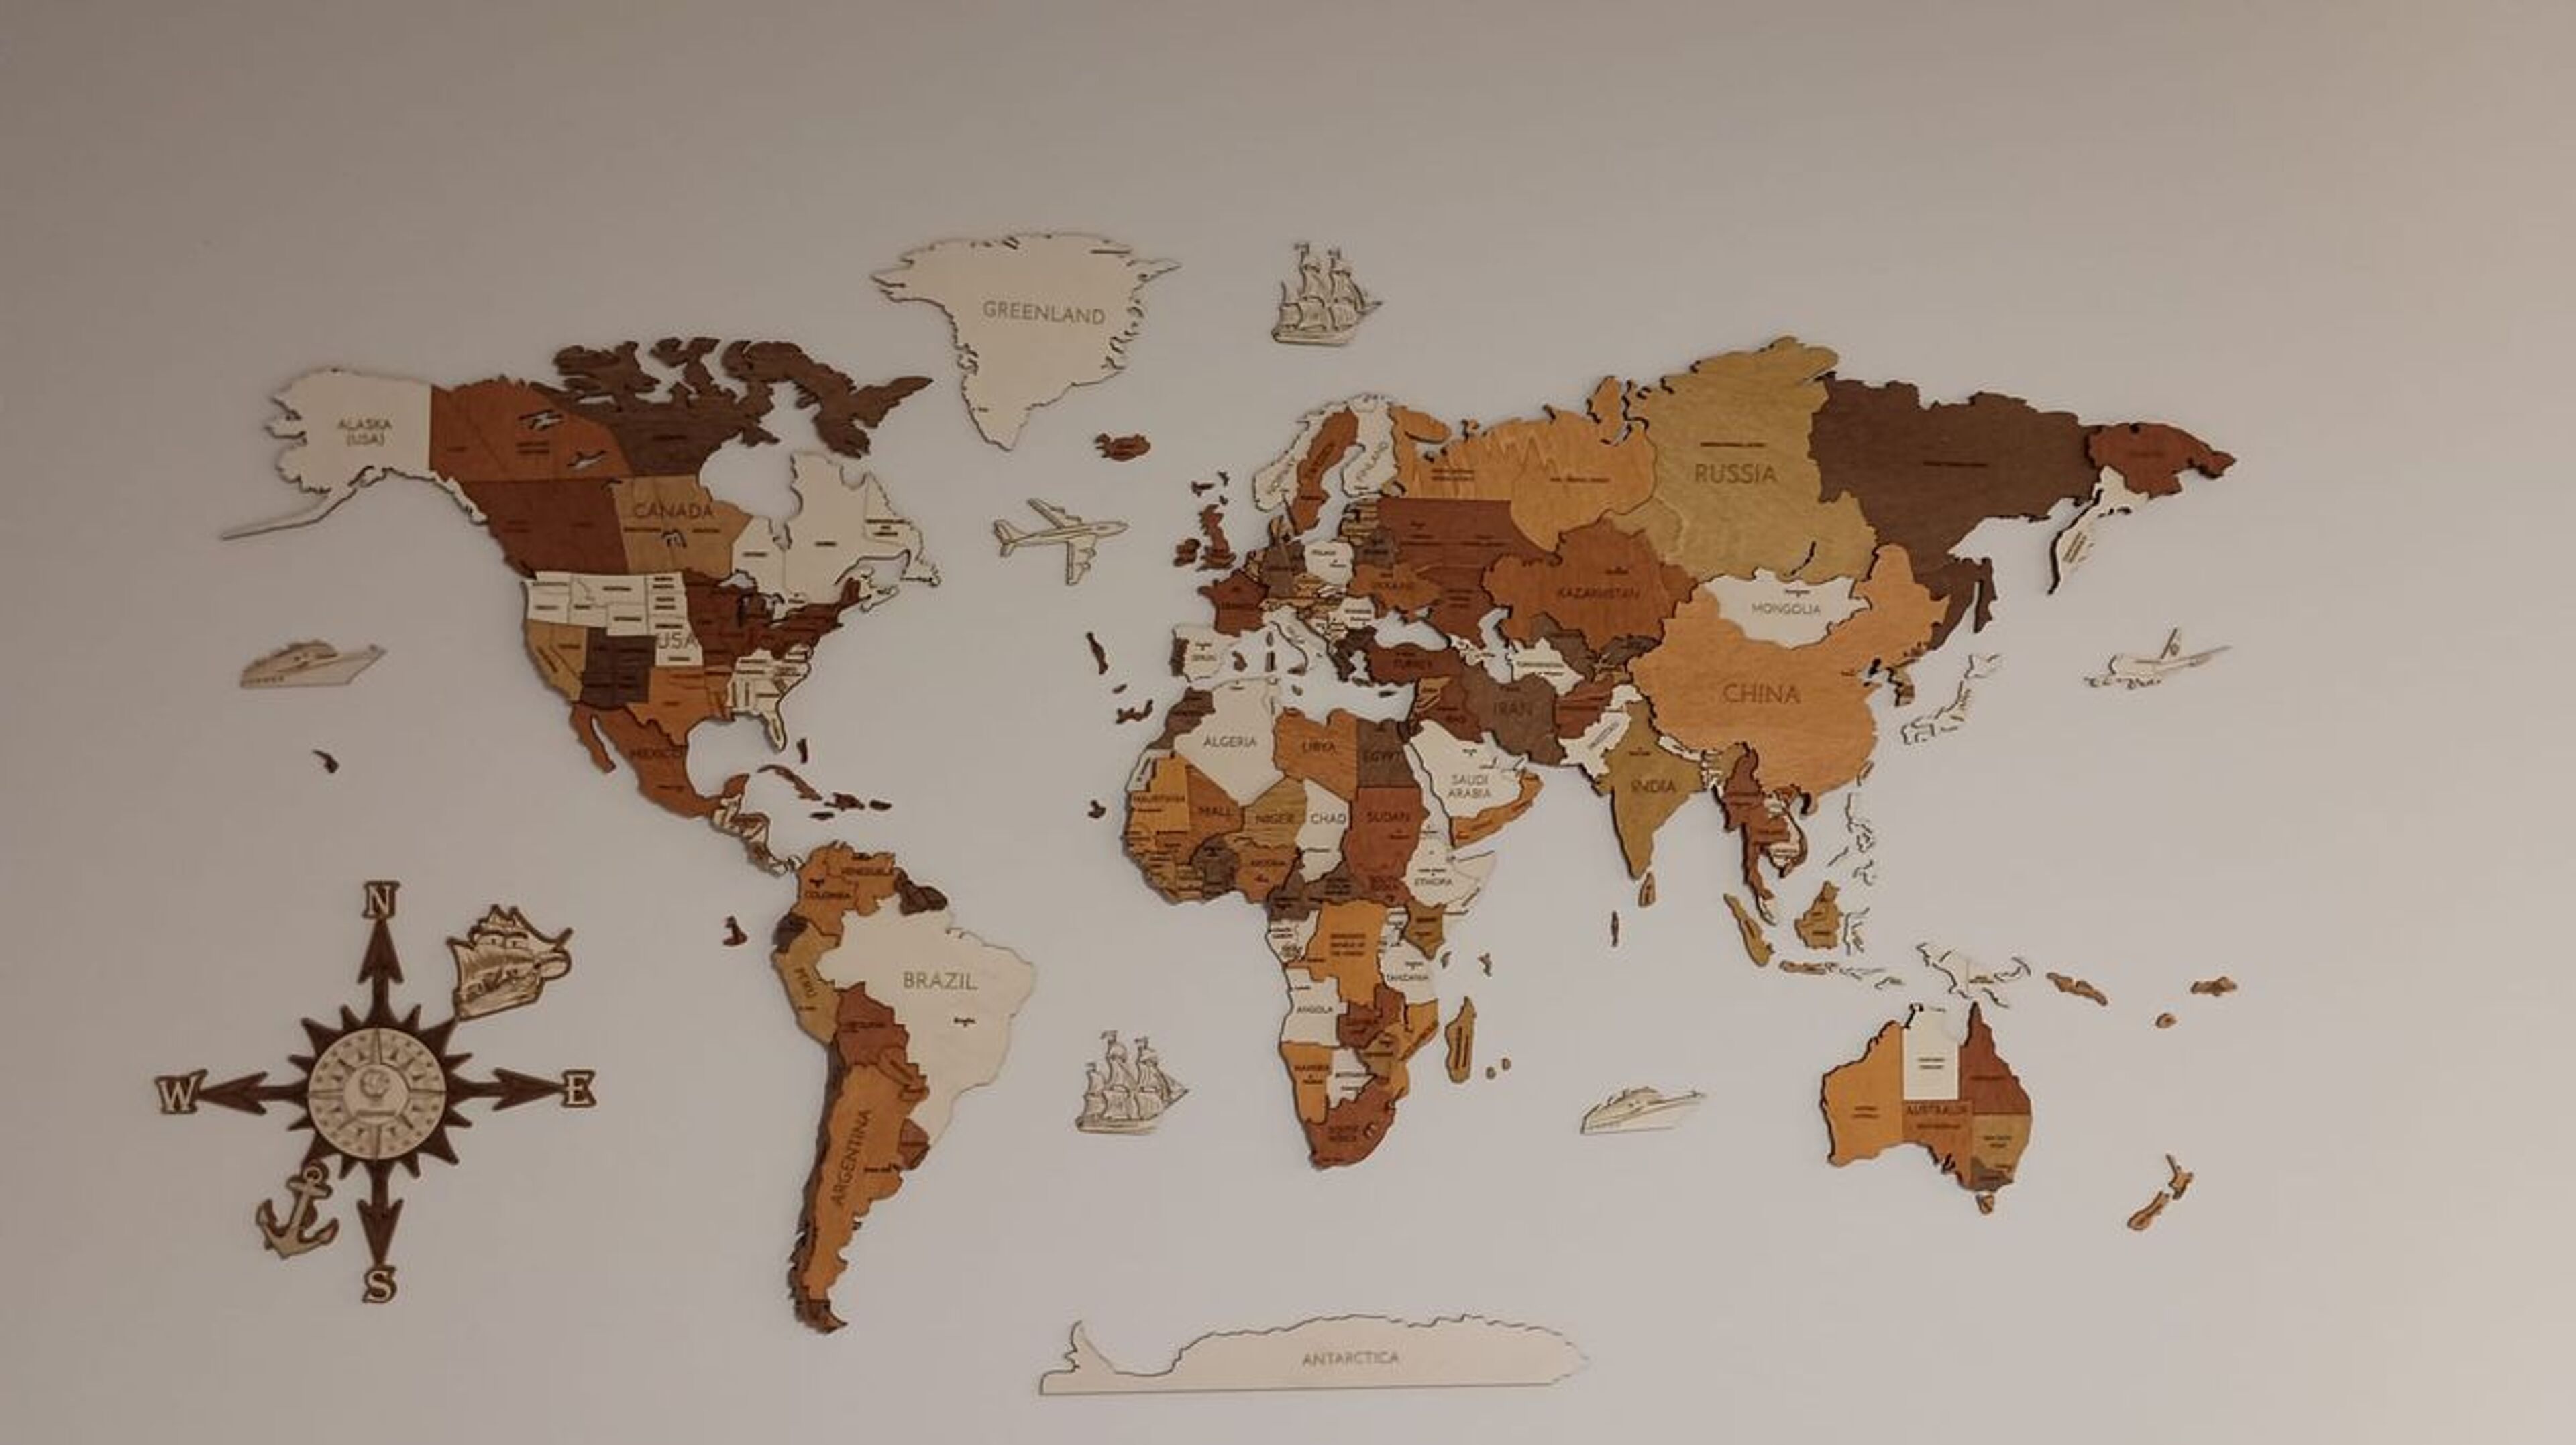 Reseña de Mapa del mundo de madera - imagen de Jozef H.